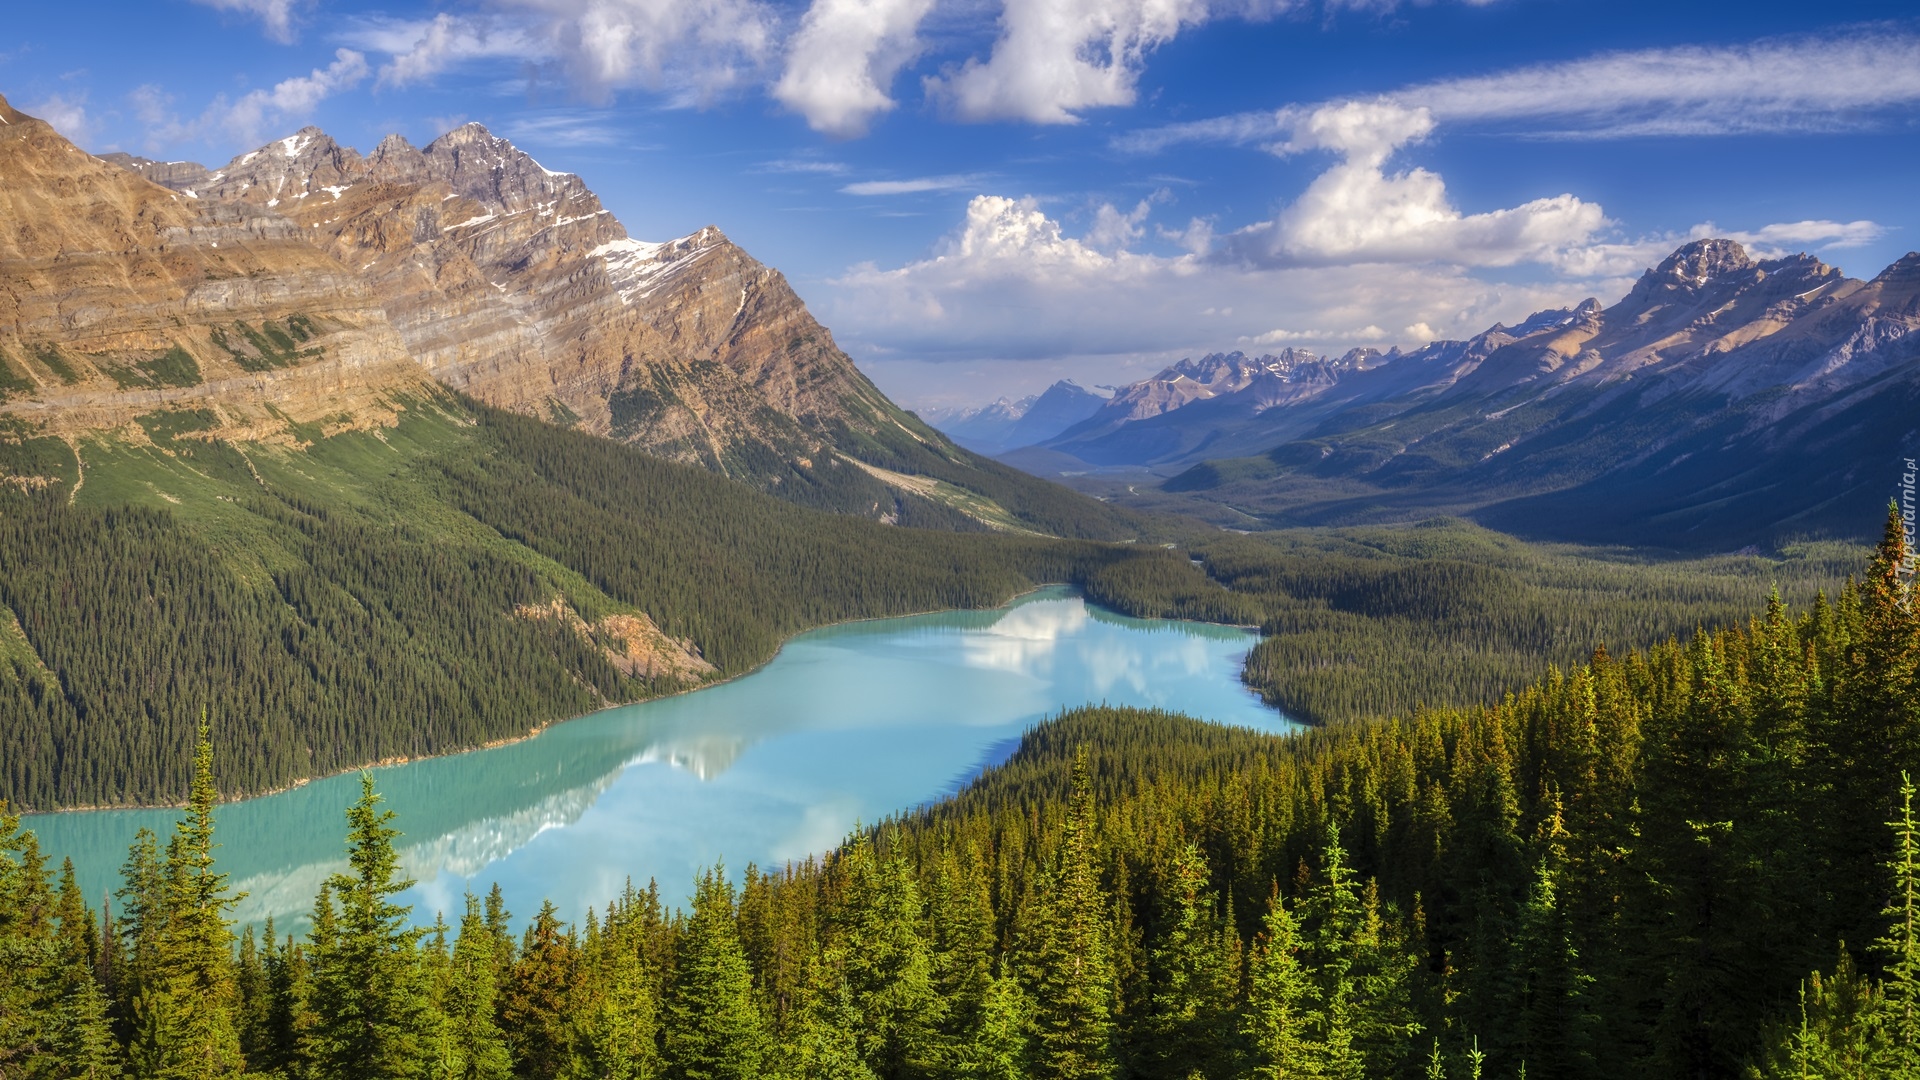 Park Narodowy Banff, Jezioro, Peyto Lake, Chmury, Drzewa, Lasy, Skały, Góry, Prowincja Alberta, Kanada